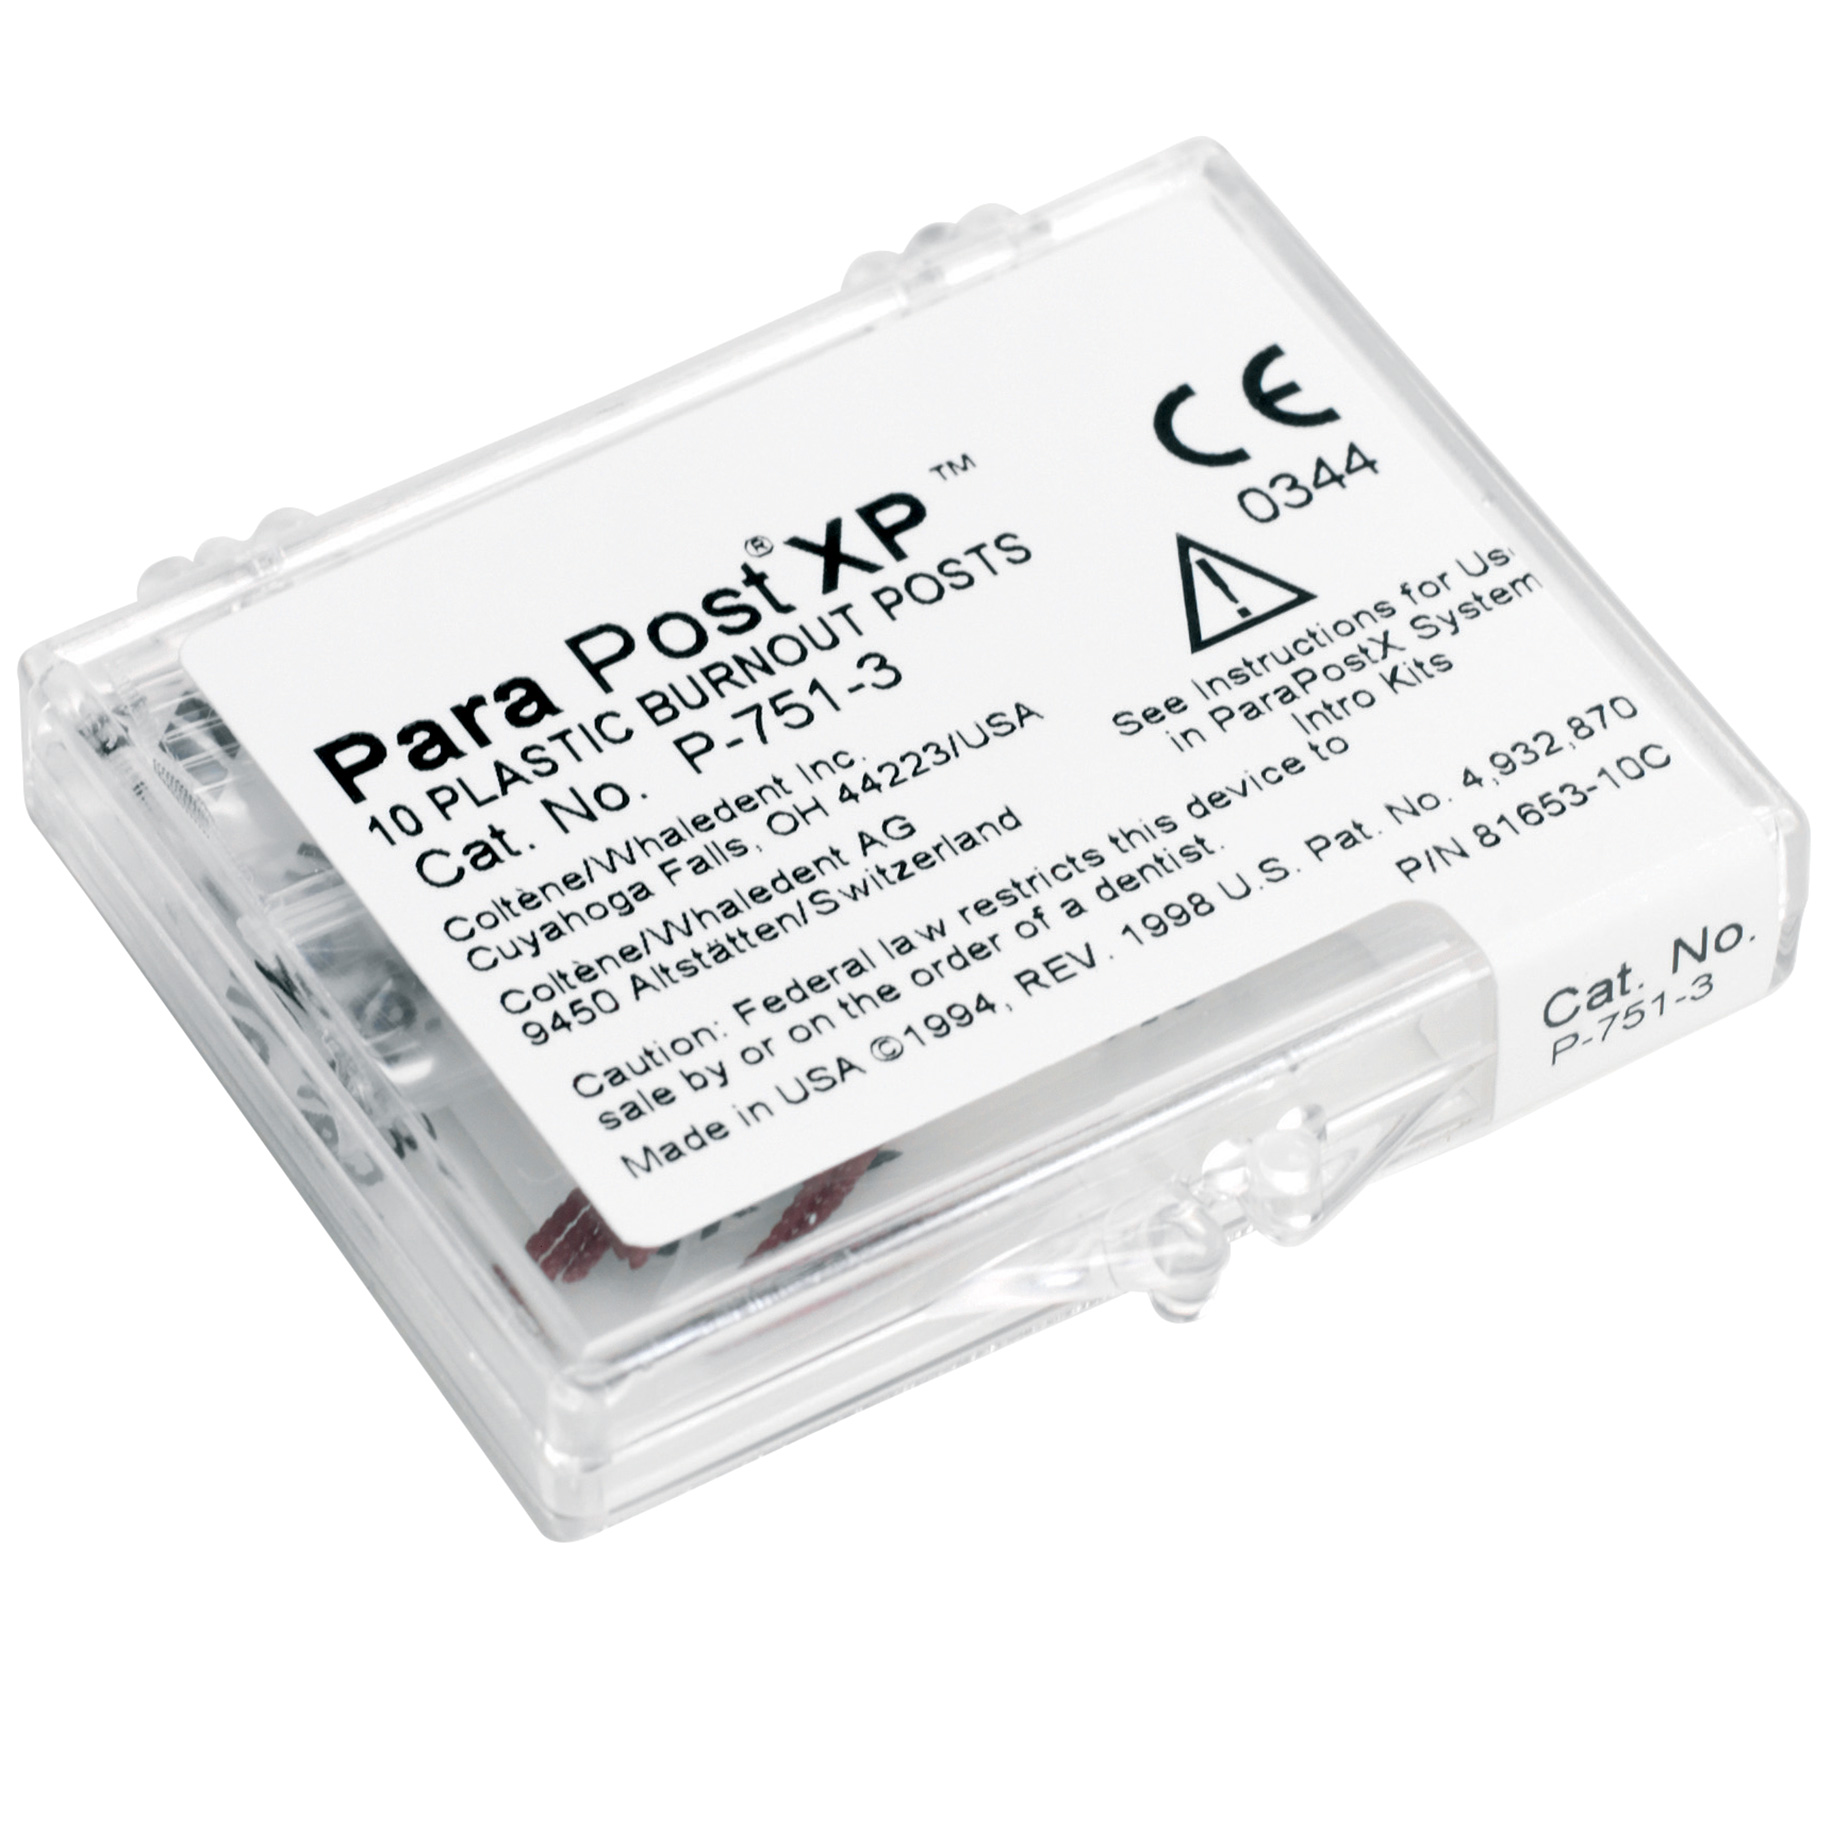 ParaPost XP Plastic Lab Burnout Posts P751-6    1.50mm    Black 